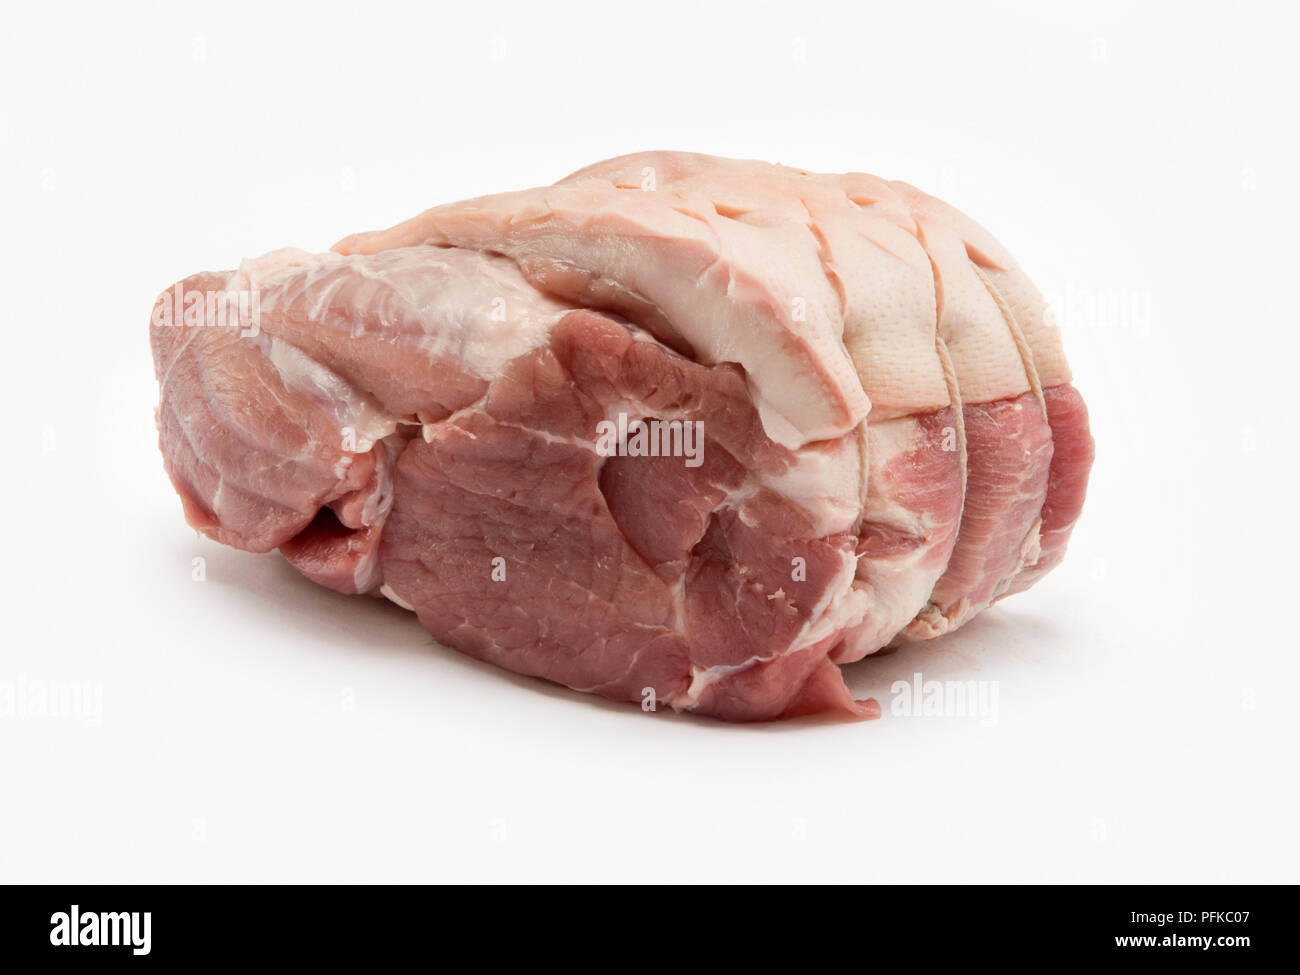 Schweinefleisch Spare Rib roast, aufgerollt und zusammen mit einer Schnur, close-up Stockfoto